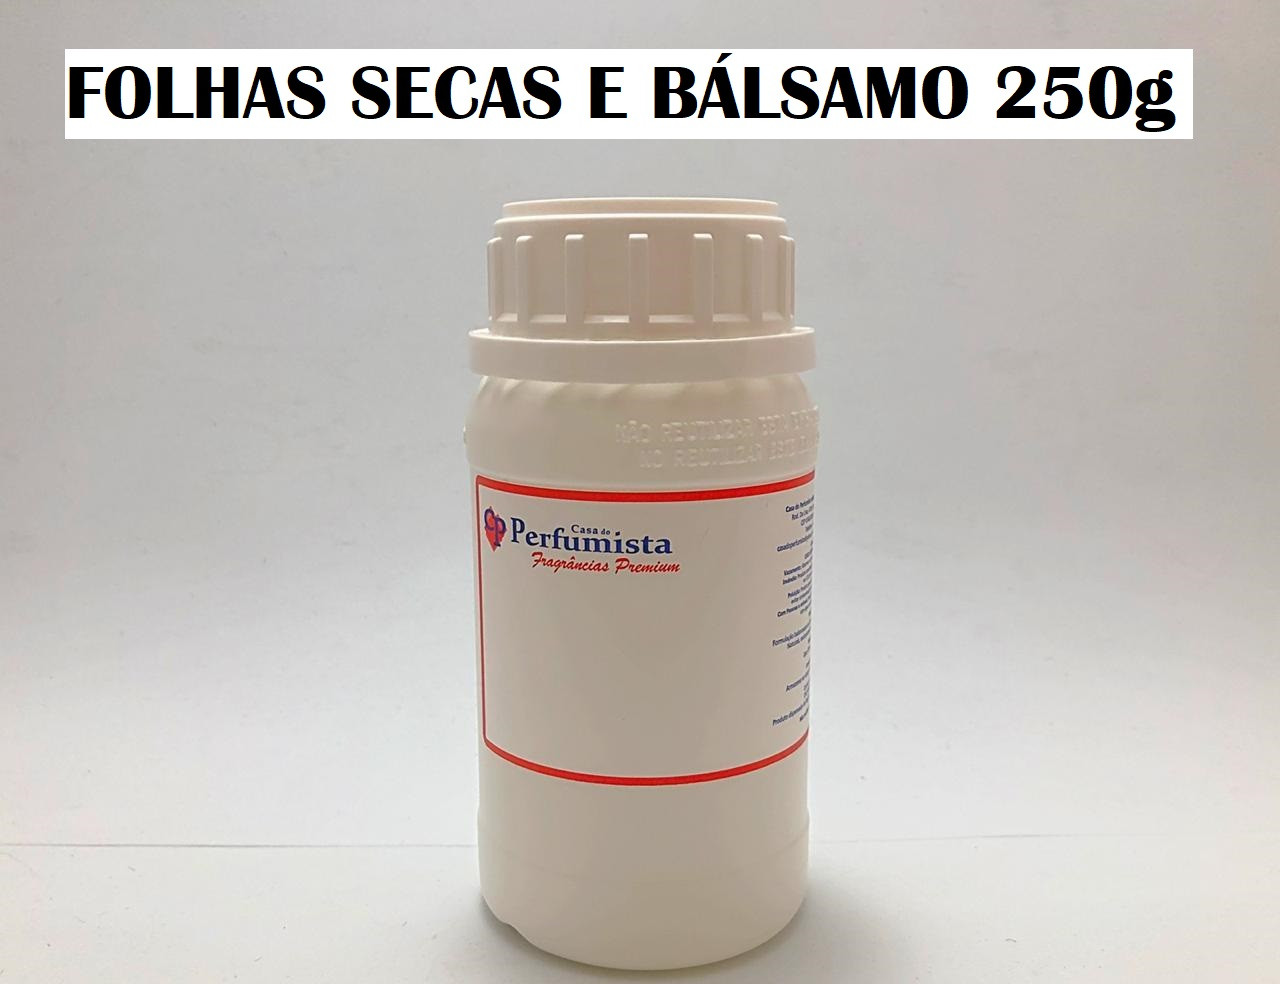 FOLHAS SECAS E BÁLSAMO - 250g